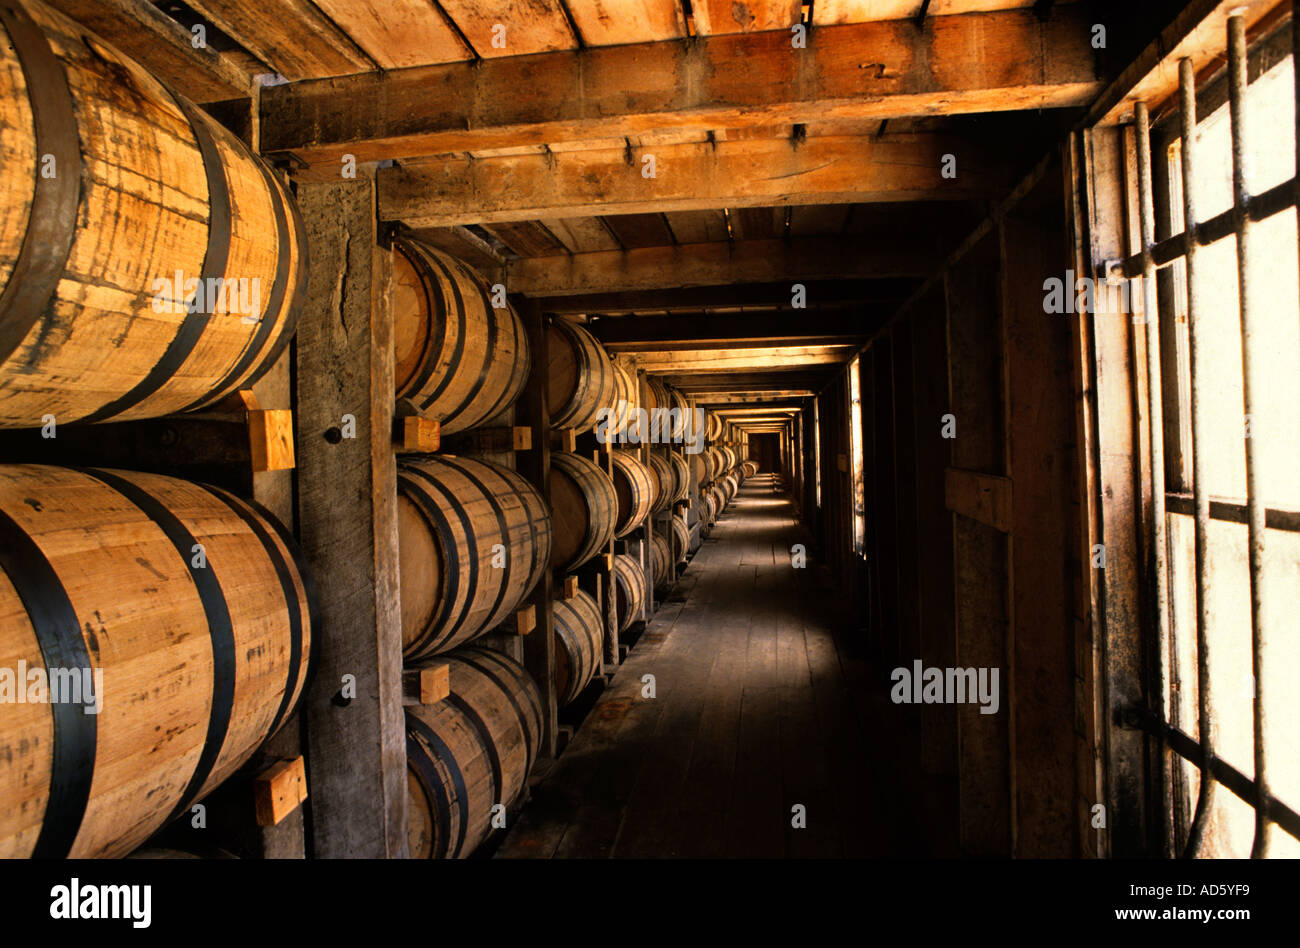 Jack Daniels Tennessee Vereinigte Staaten von Amerika USA Bourbon Whisky-Destillerie Stockfoto